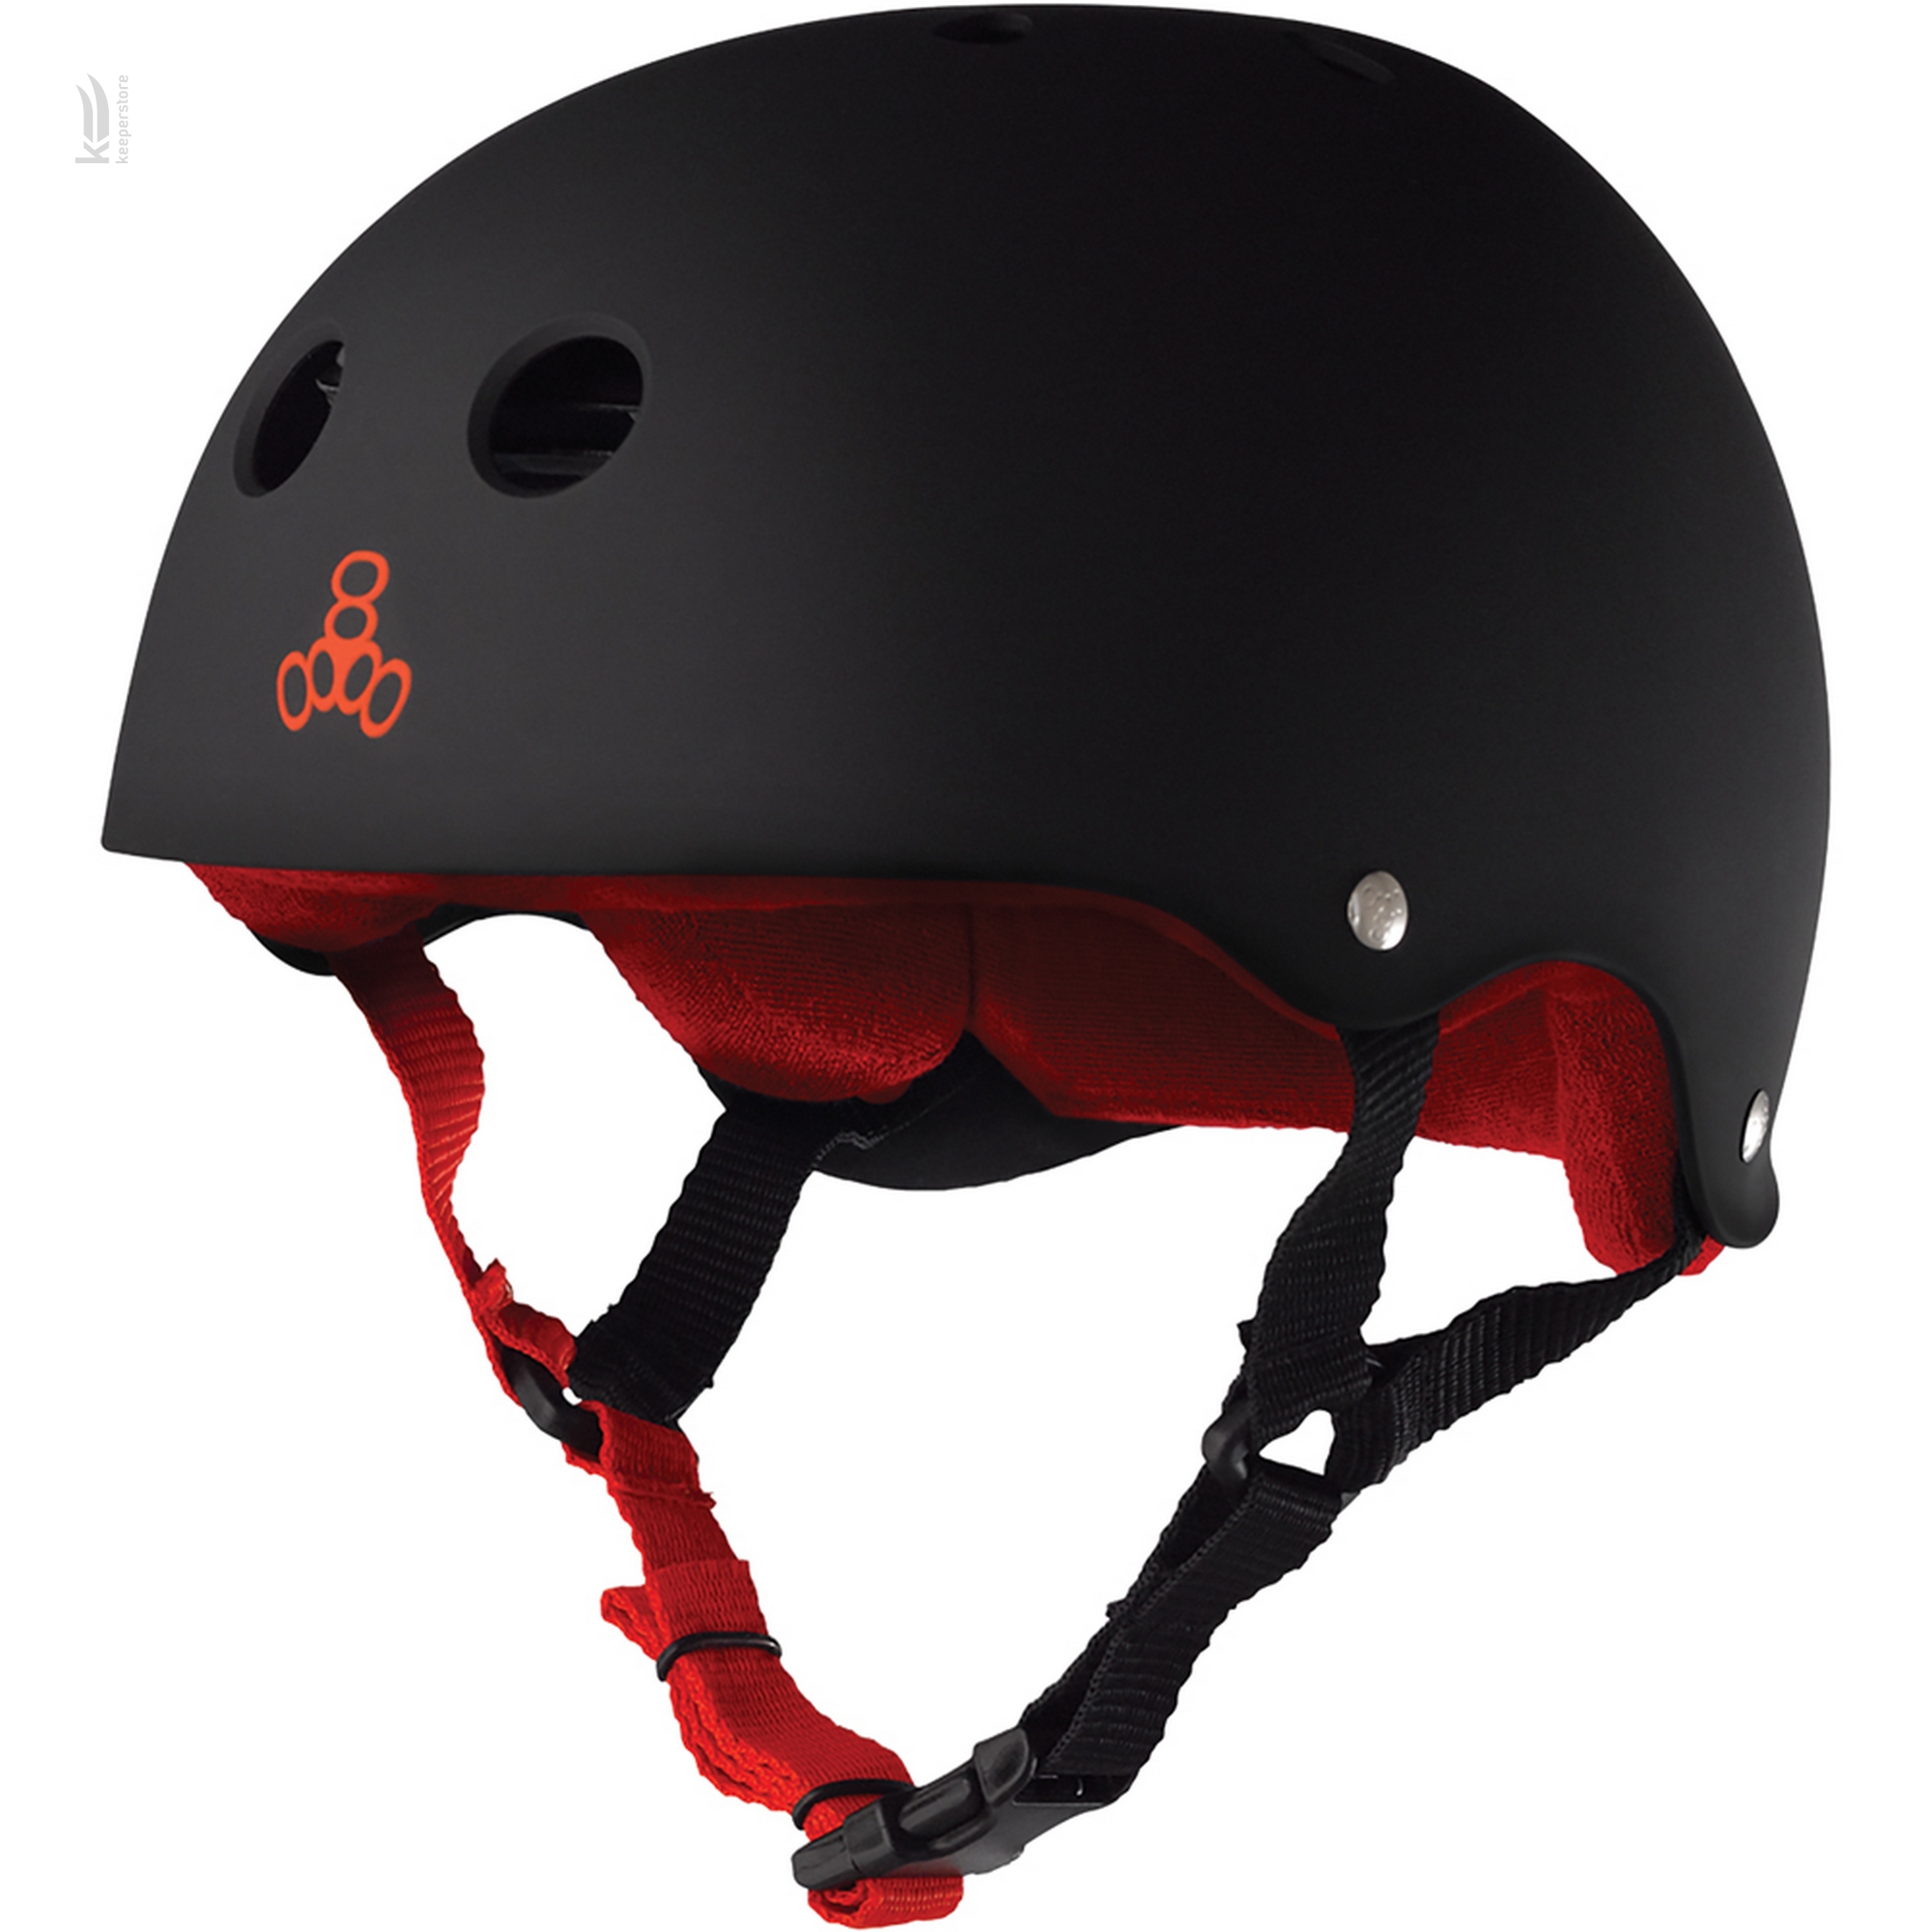 Шлем для роликов Triple8 Sweatsaver Helmet Black w/ Red (M)